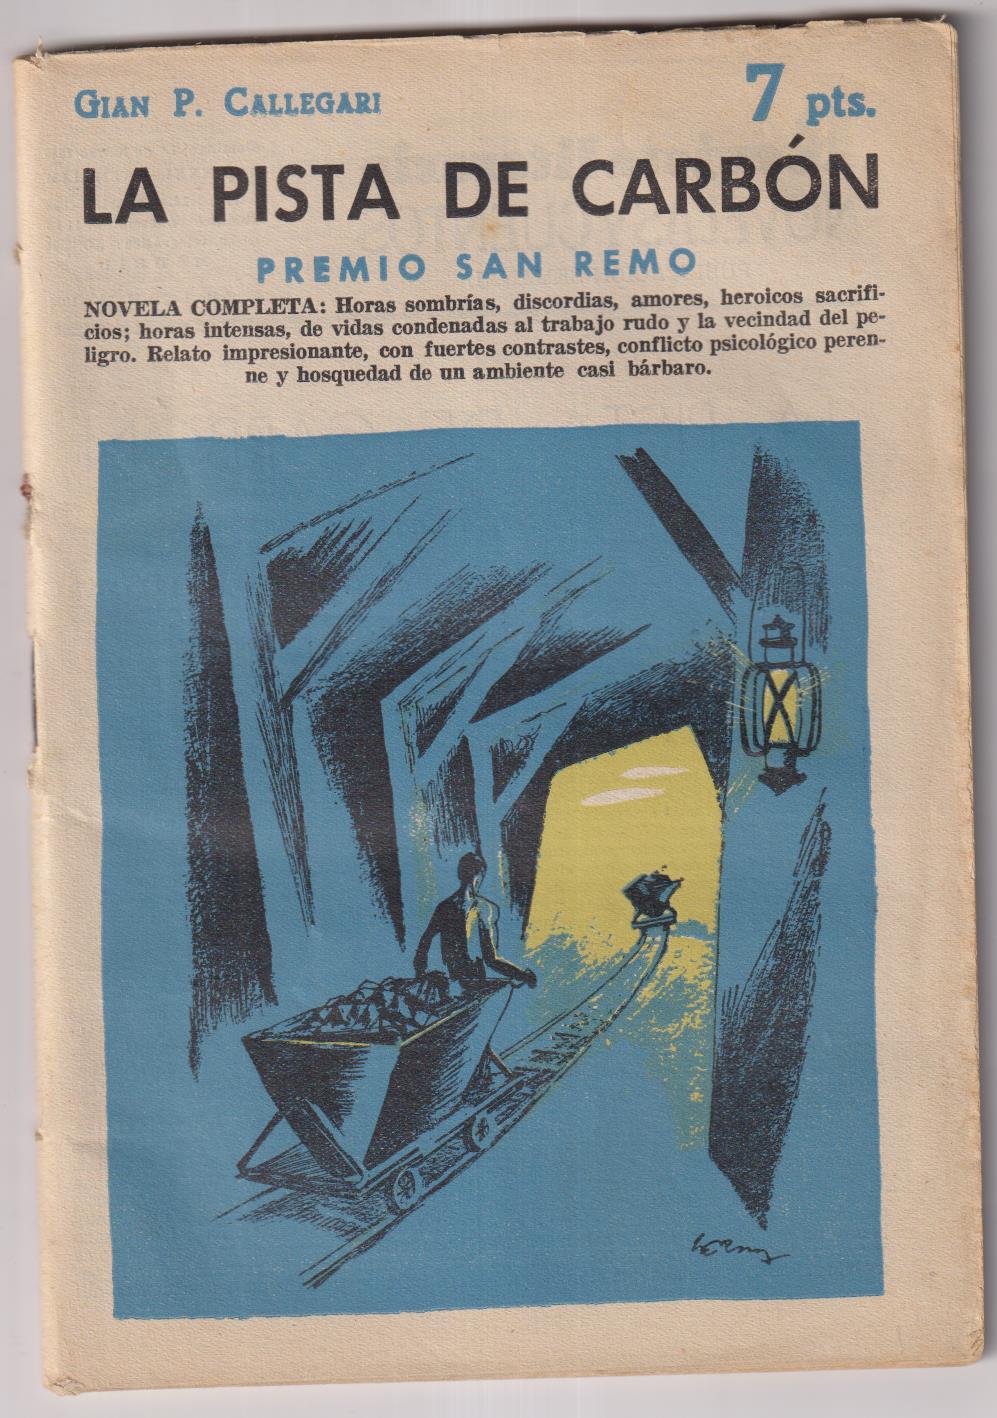 Revista Literaria Novelas y Cuentos nº 1451. Gian P. Callegari. La pista de carbón, año 1959